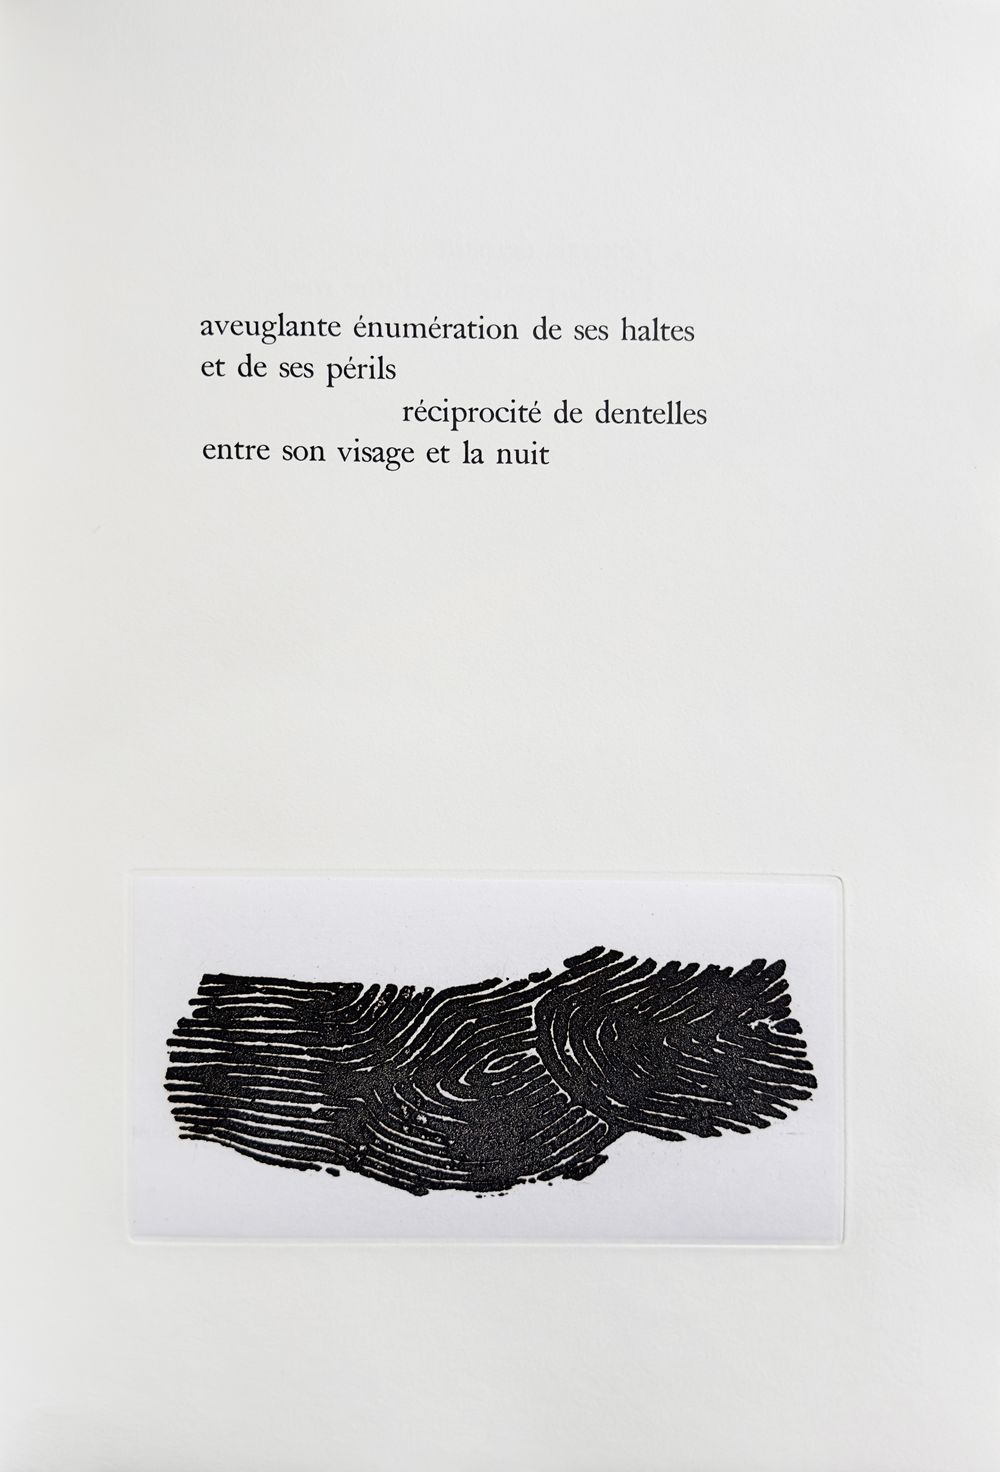 Proximité du murmure (8 gravures) - texte de Jacques Dupin